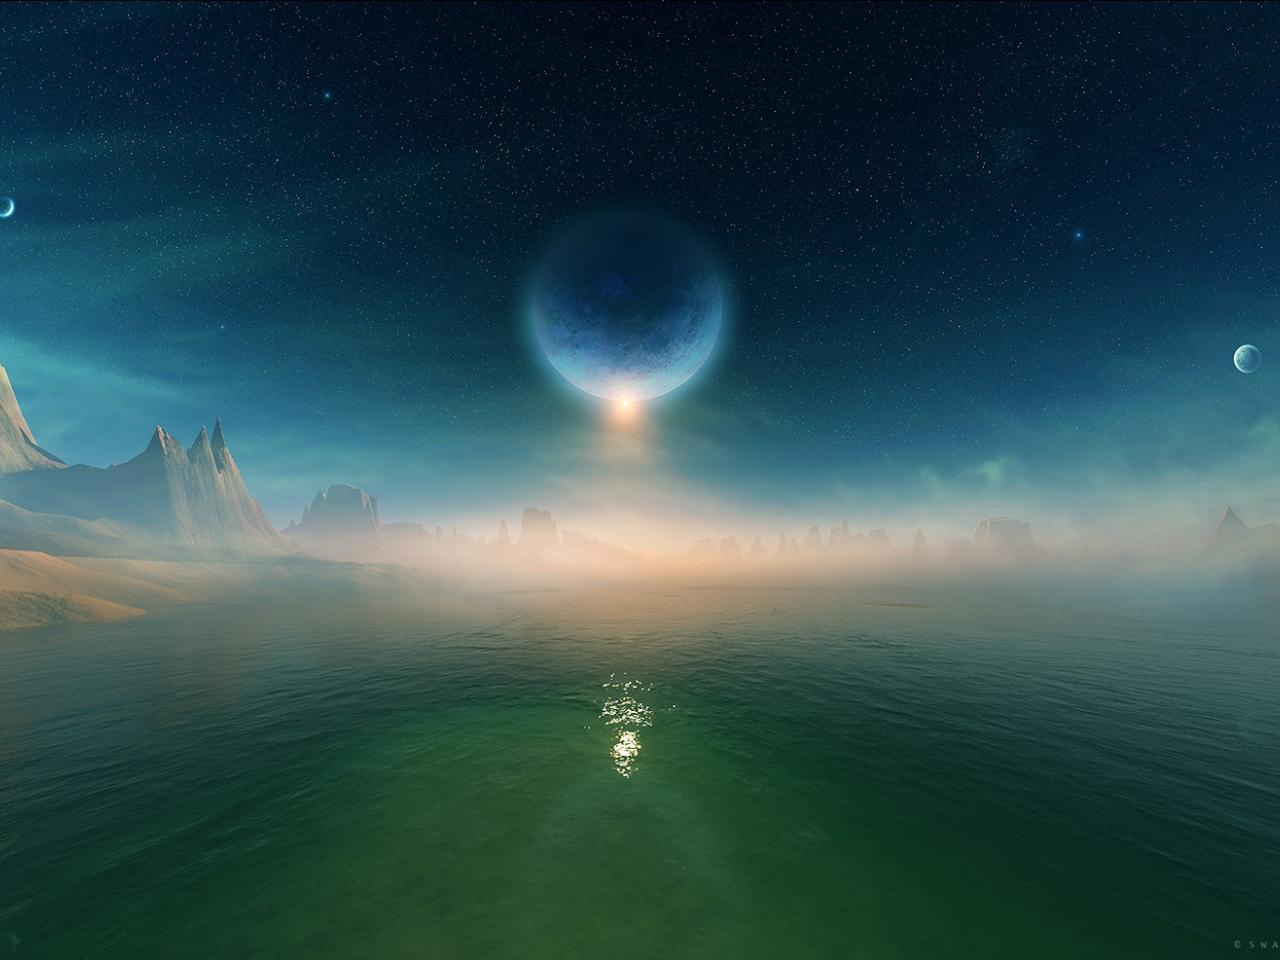 обои Озеро на чужой планете фото